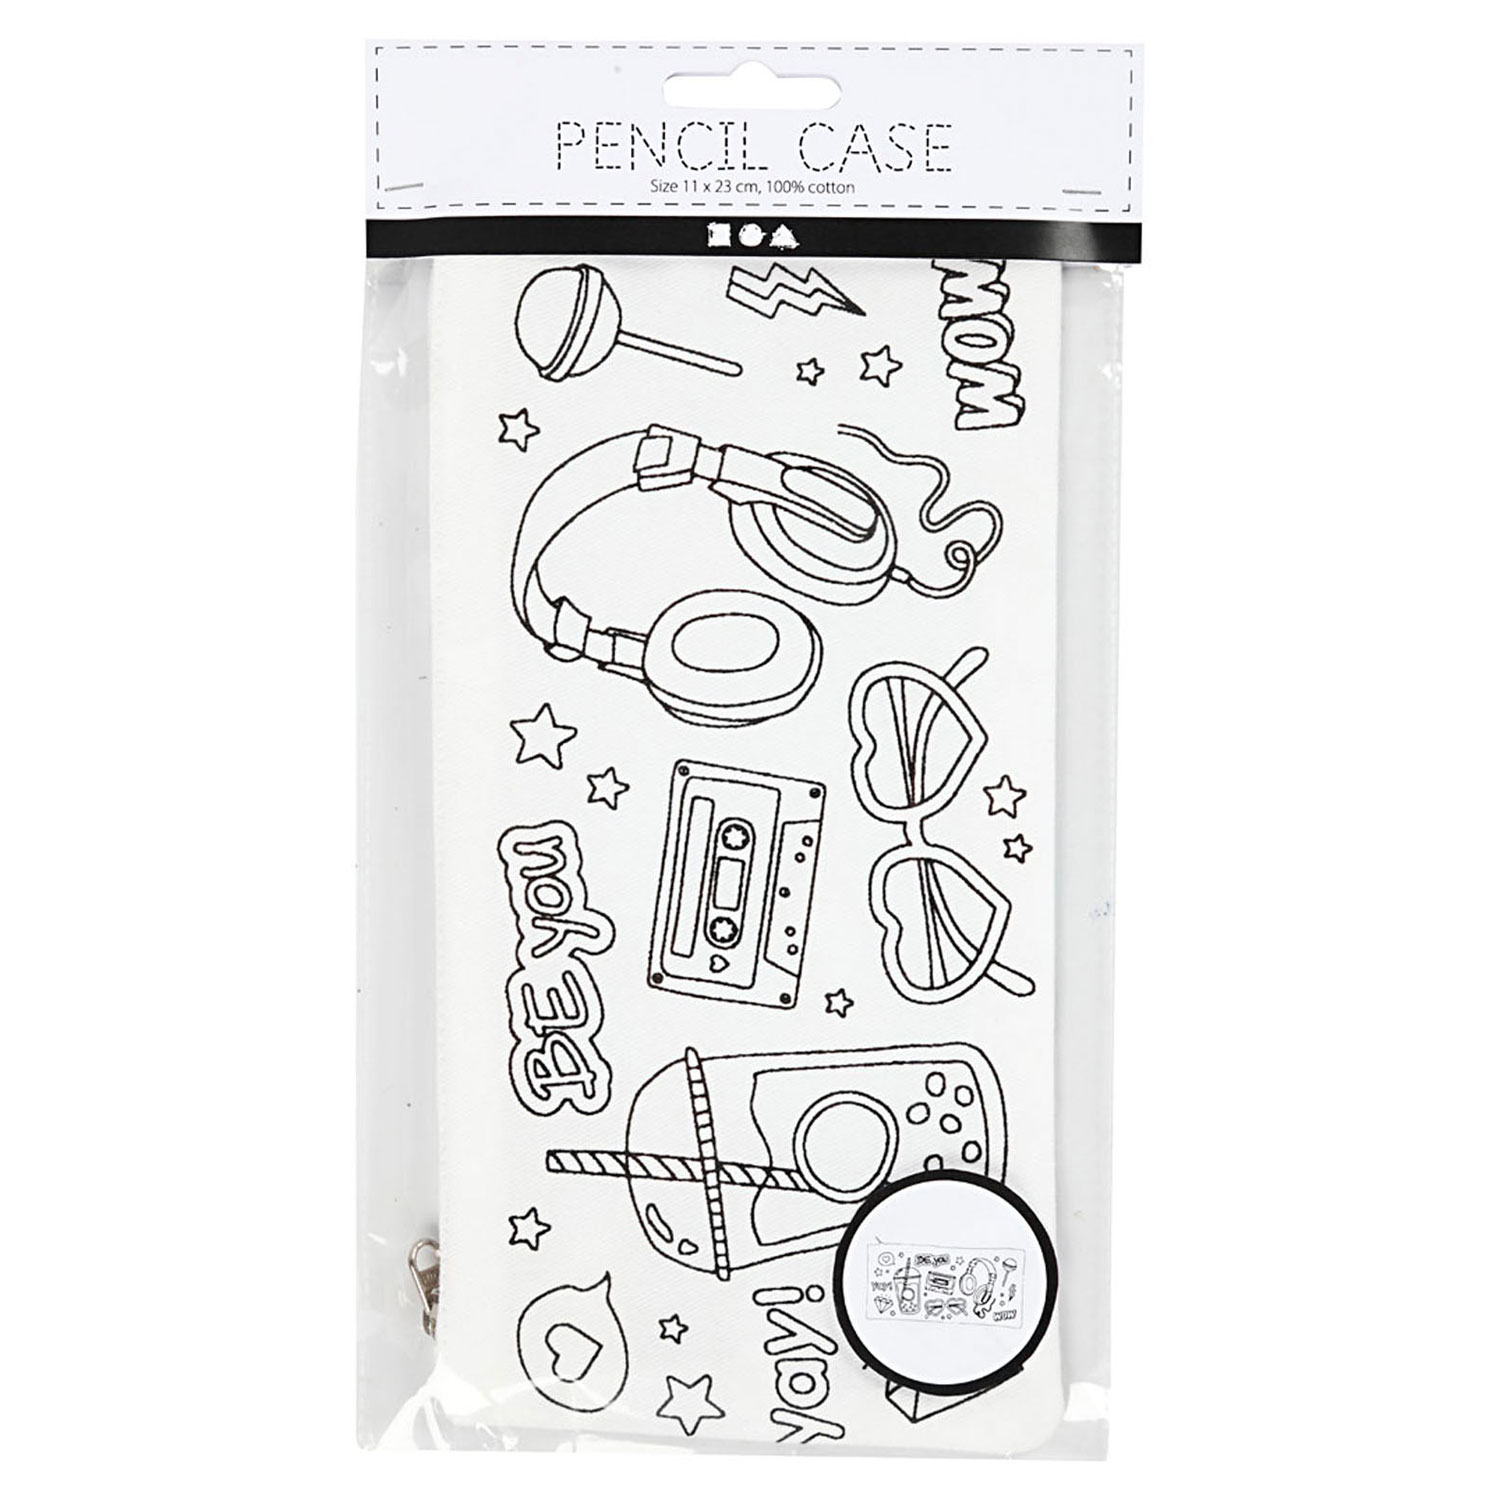 White Cotton Pencil Case, size 11x23 cm